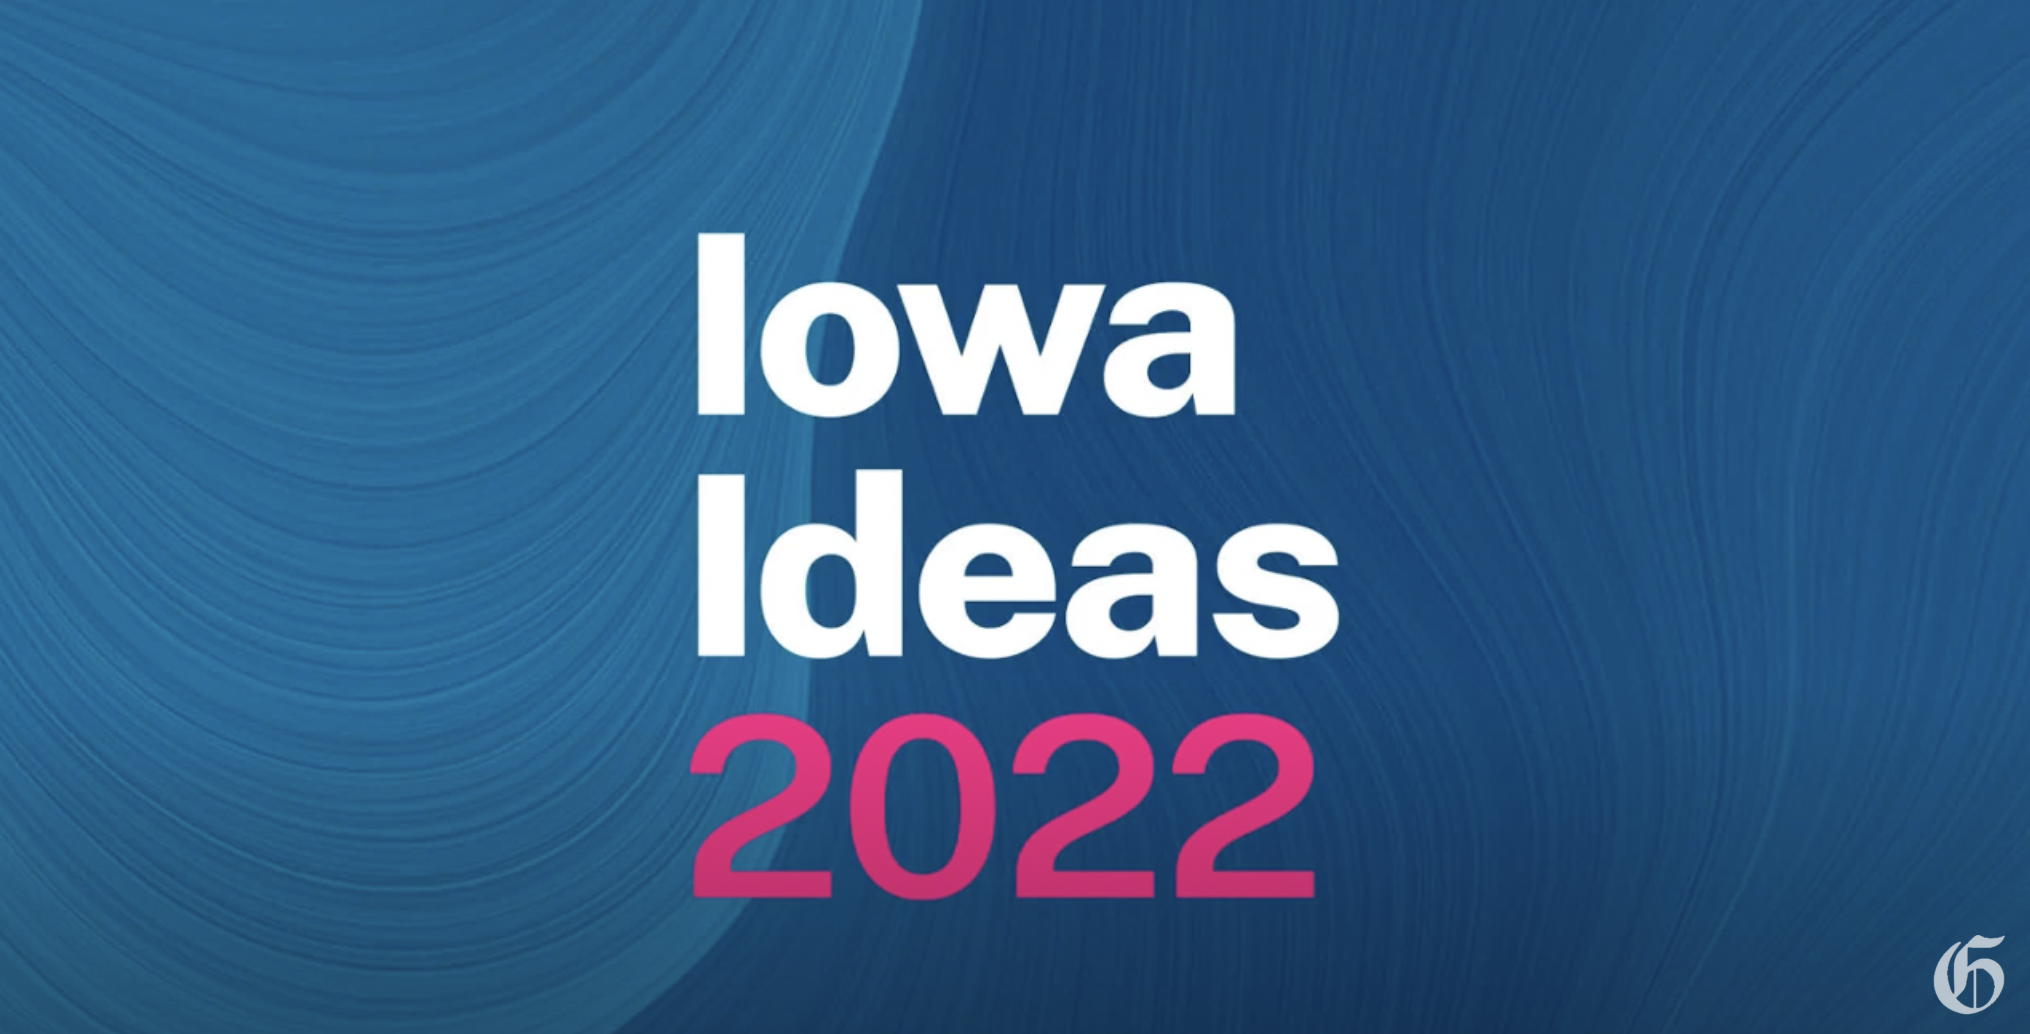 Iowa Ideas 2022